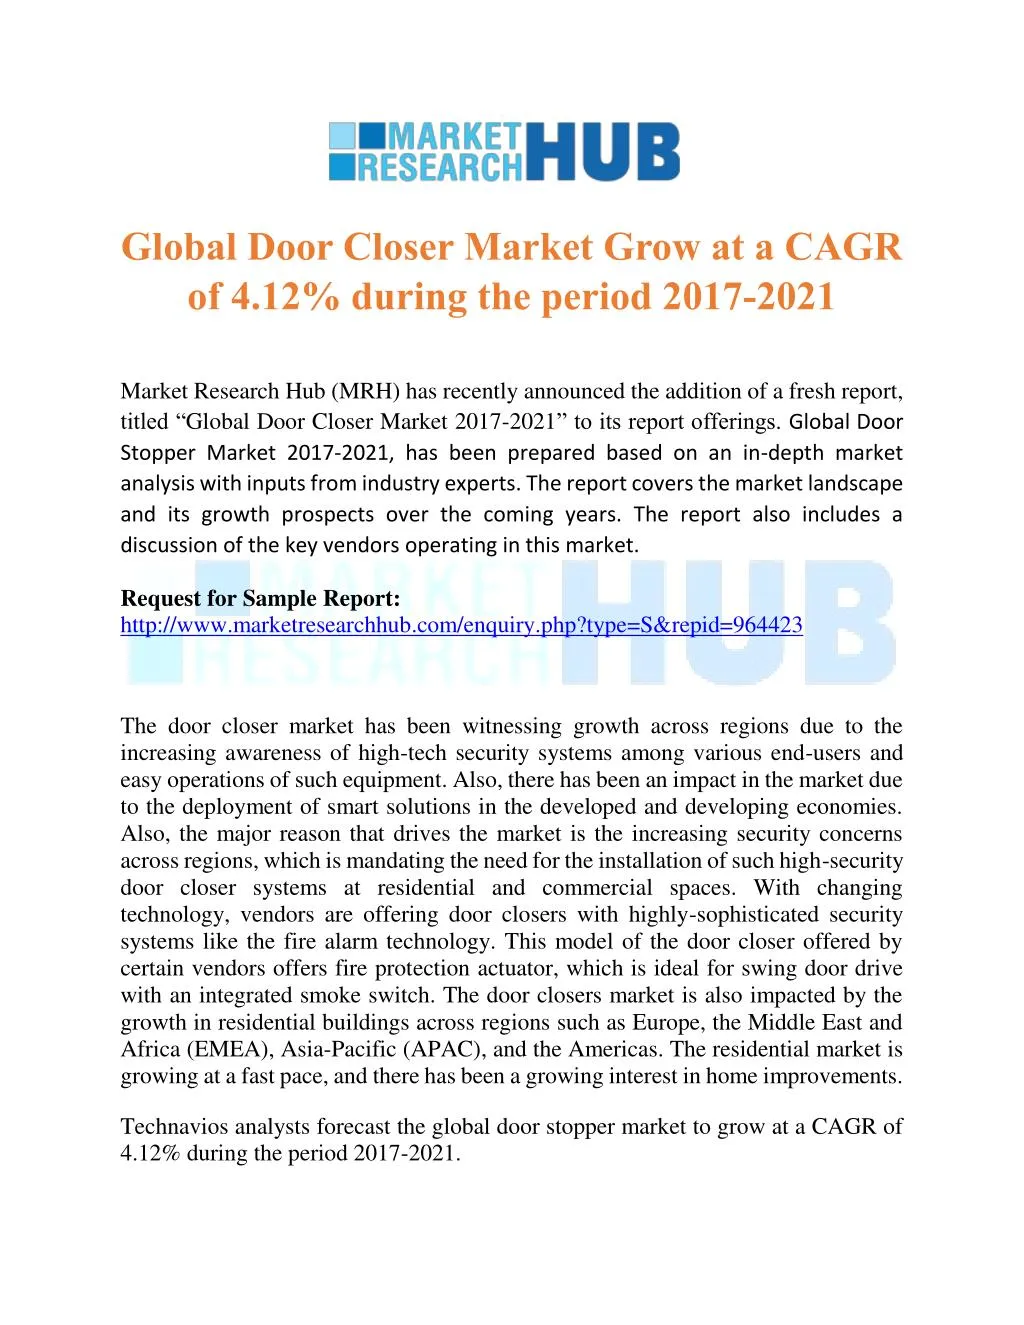 global door closer market grow at a cagr